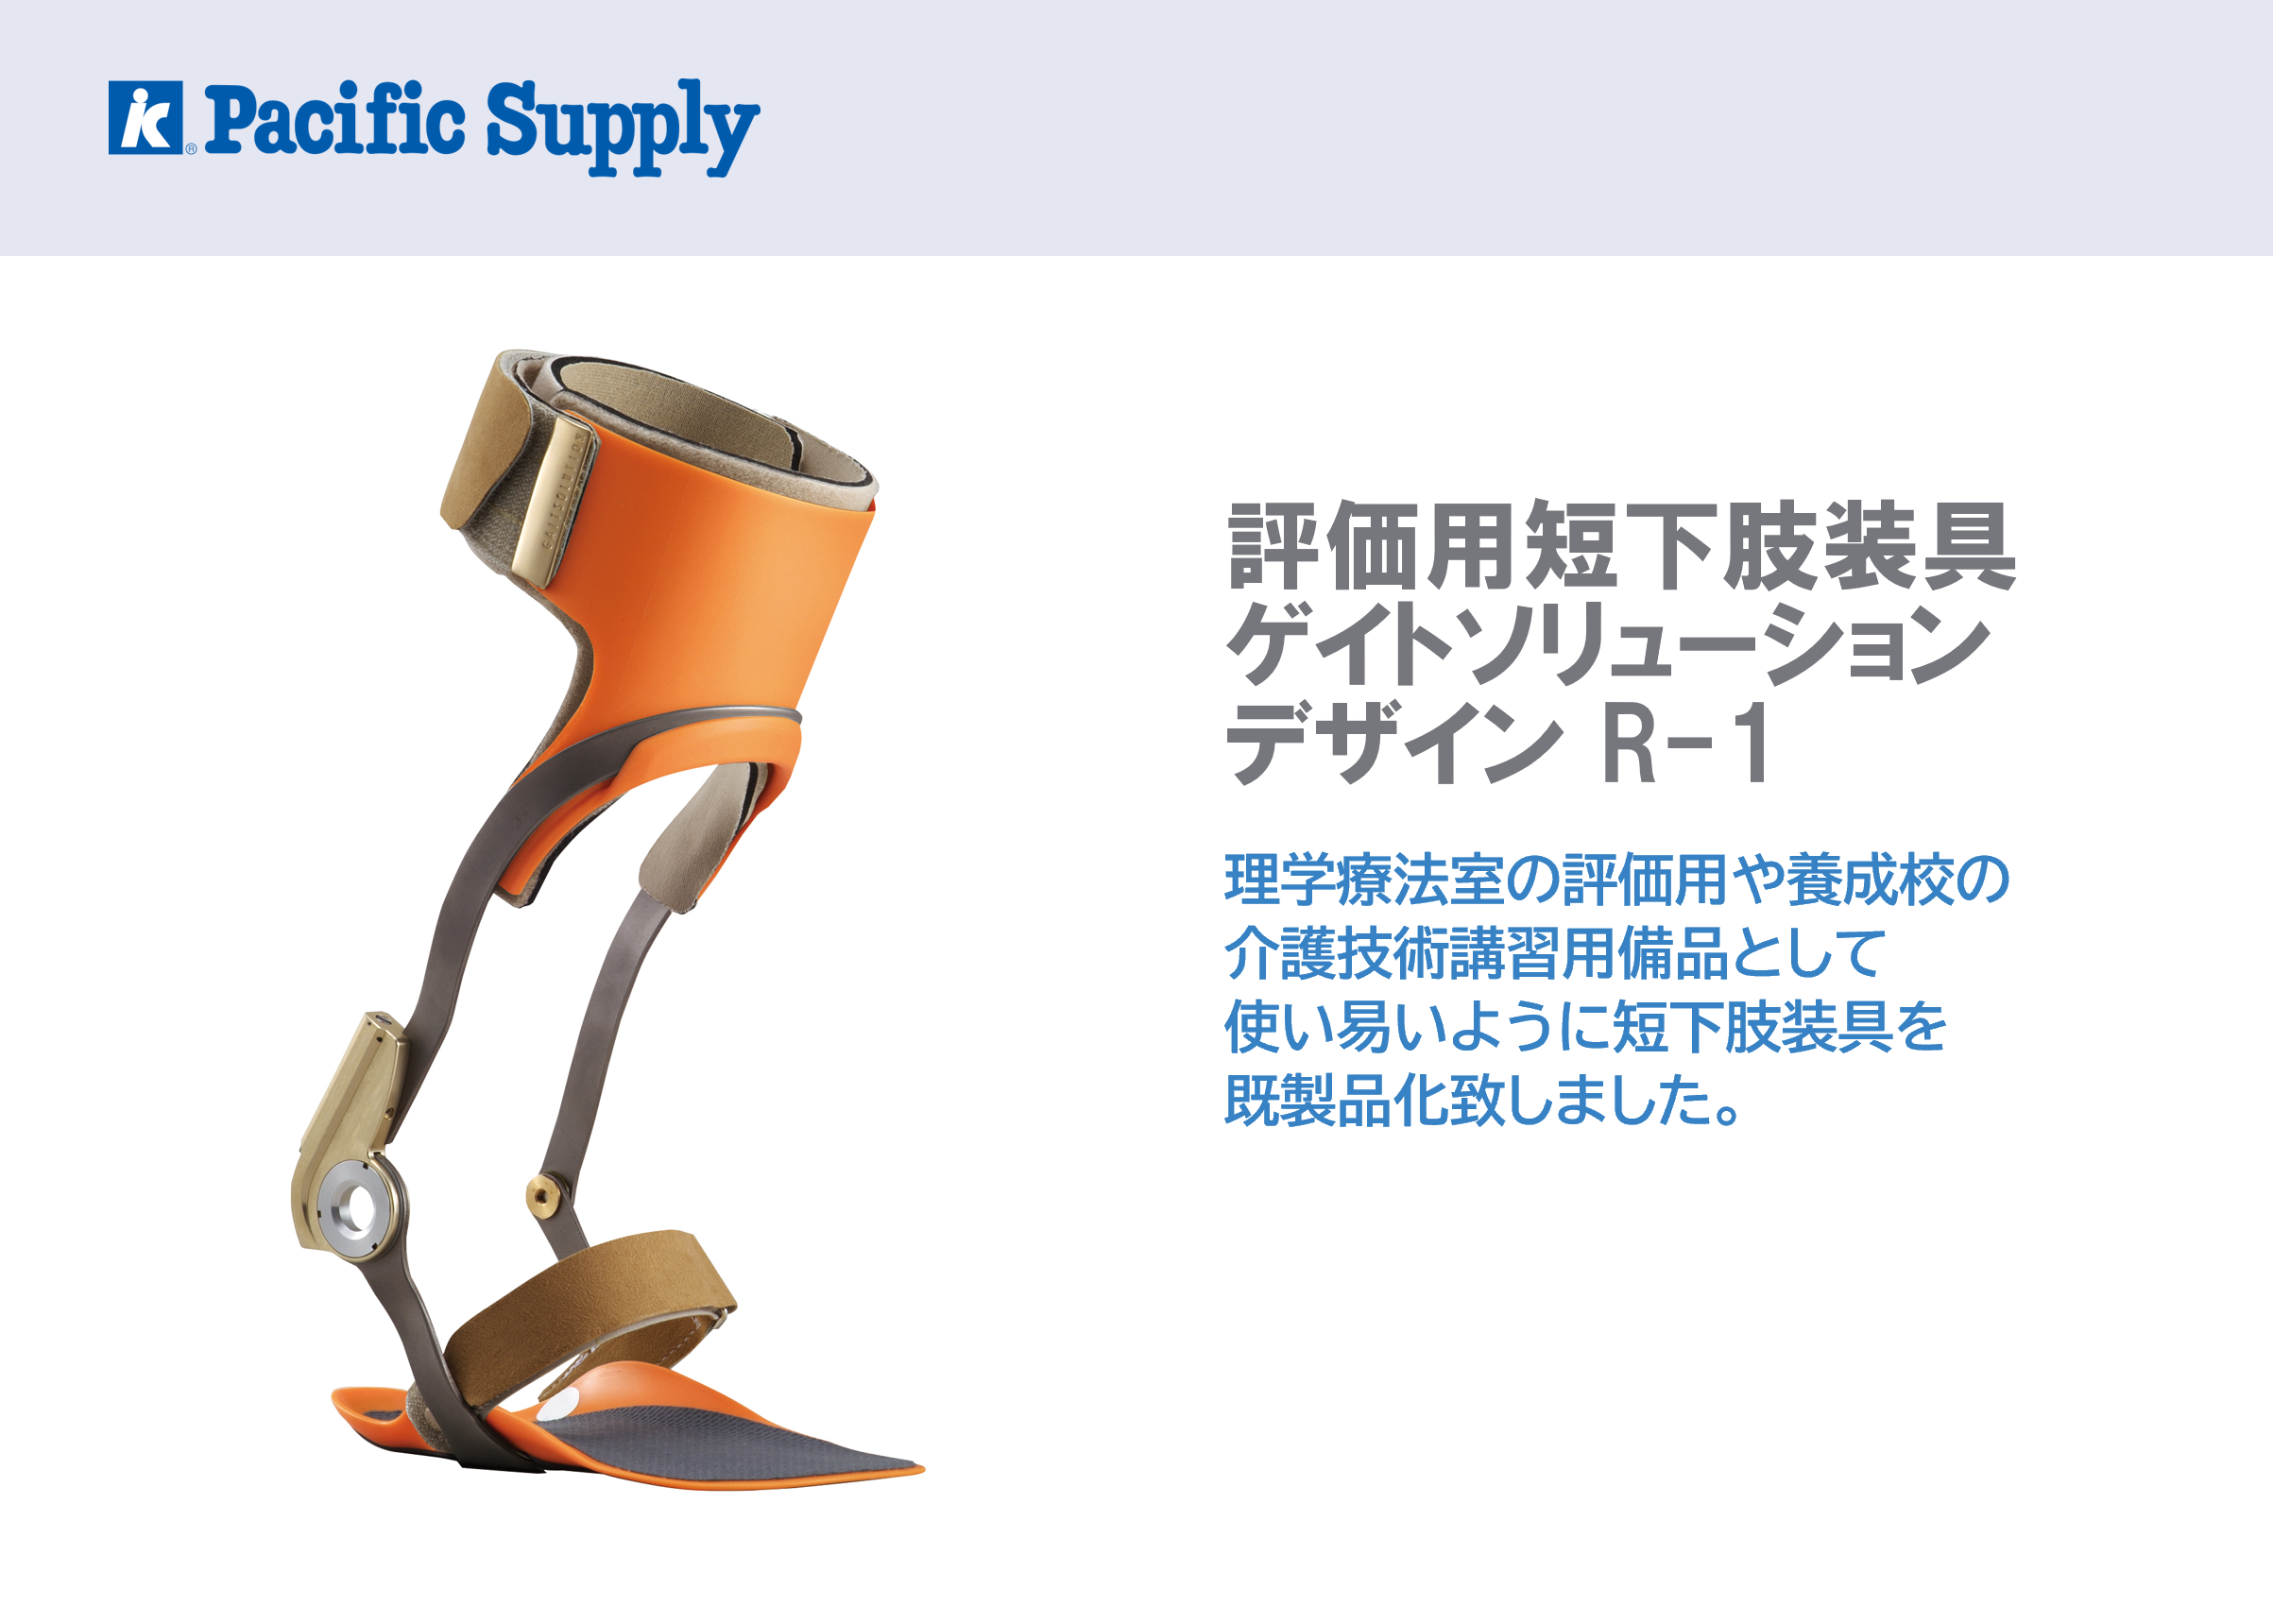 評価用短下肢装具 ゲイトソリューションデザイン R-1 | 製品詳細 